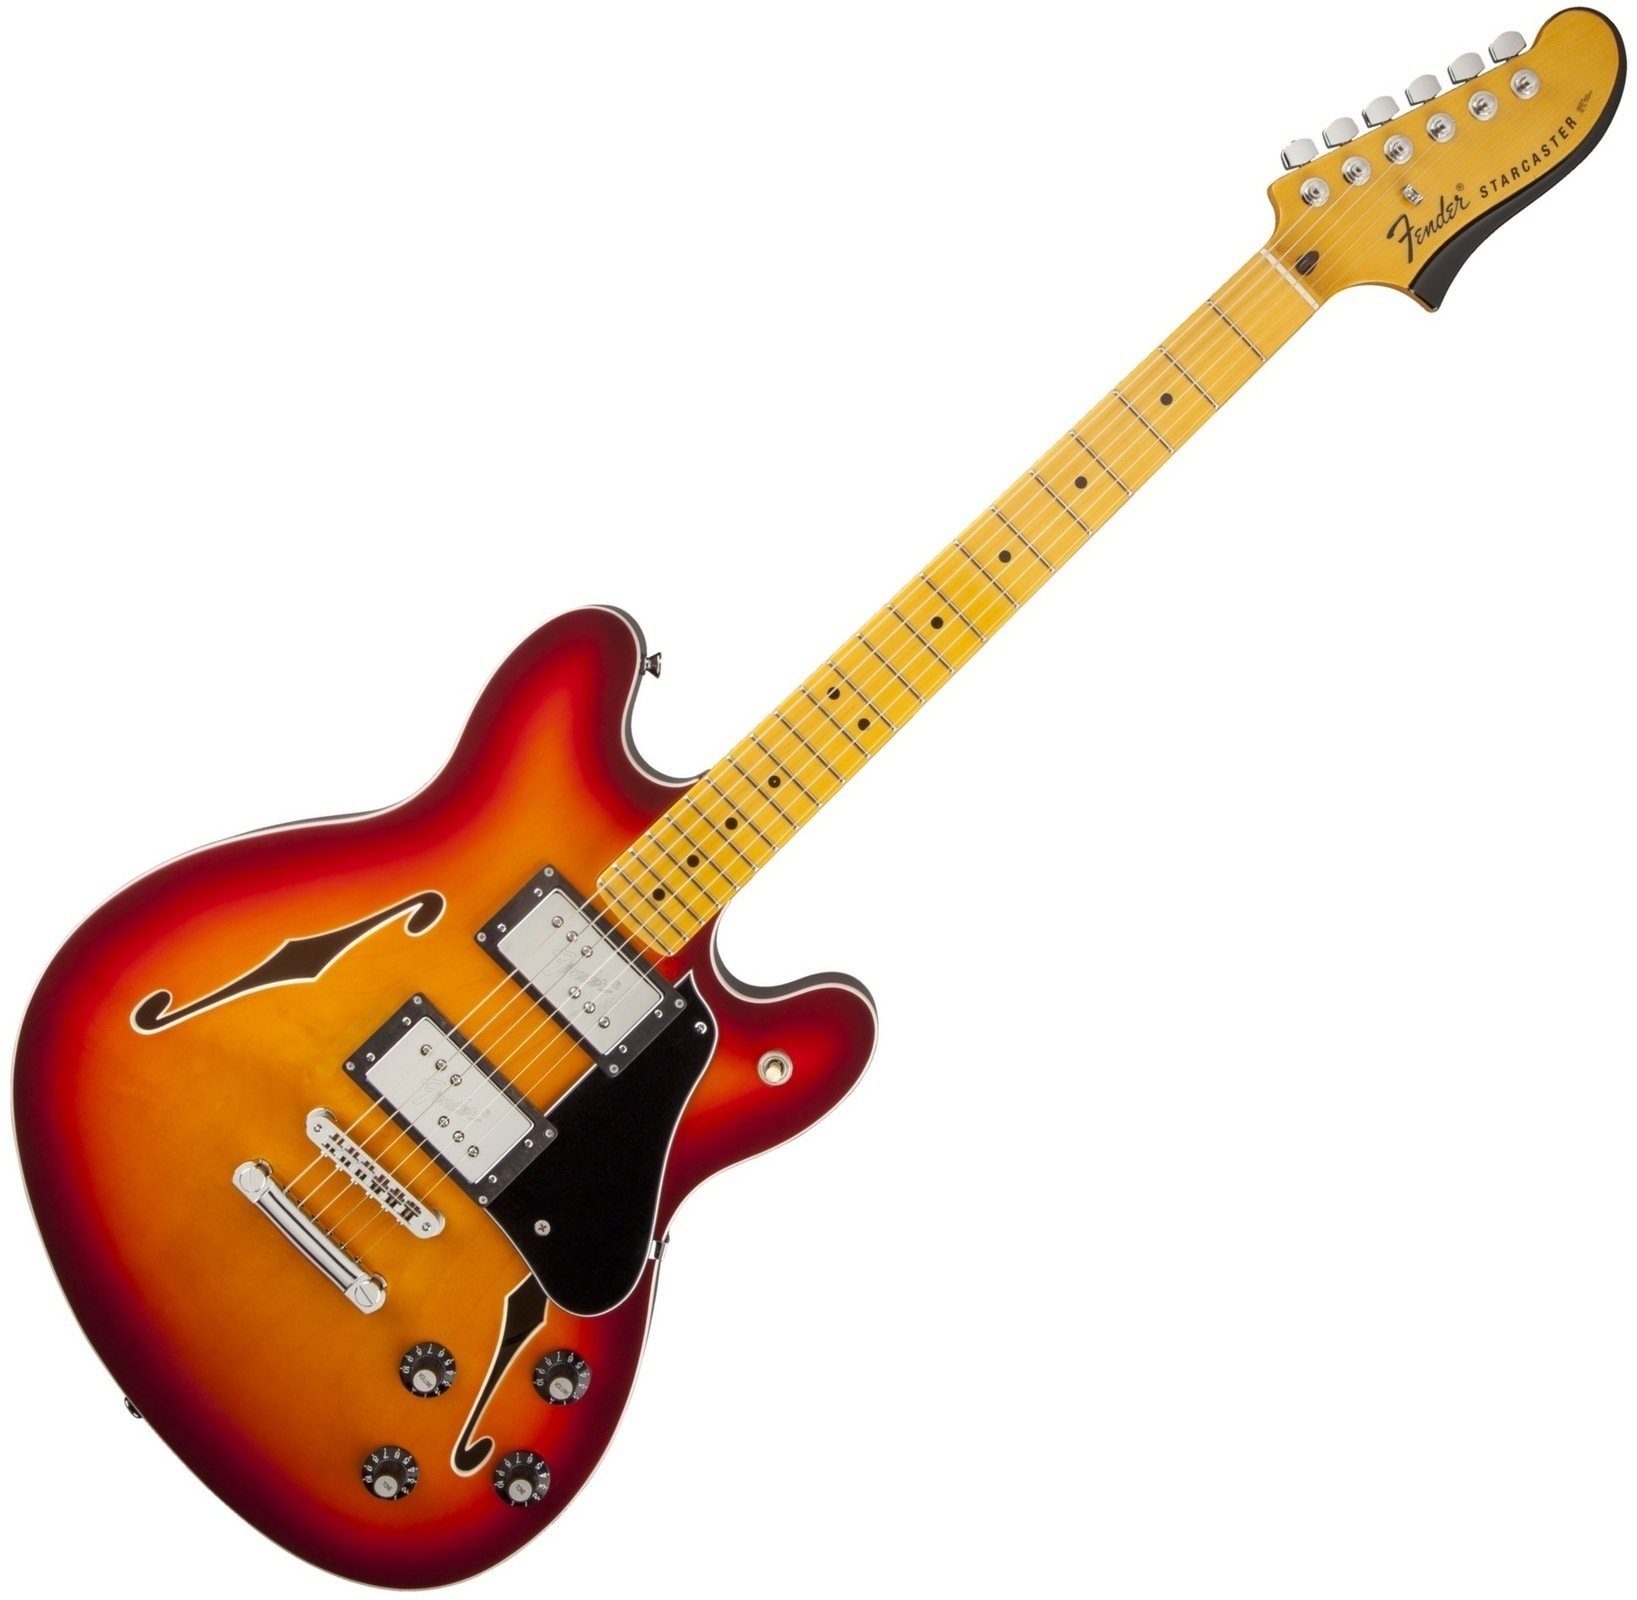 Ημιακουστική Κιθάρα Fender Starcaster, Maple Fingerboard, Aged Cherry Burst